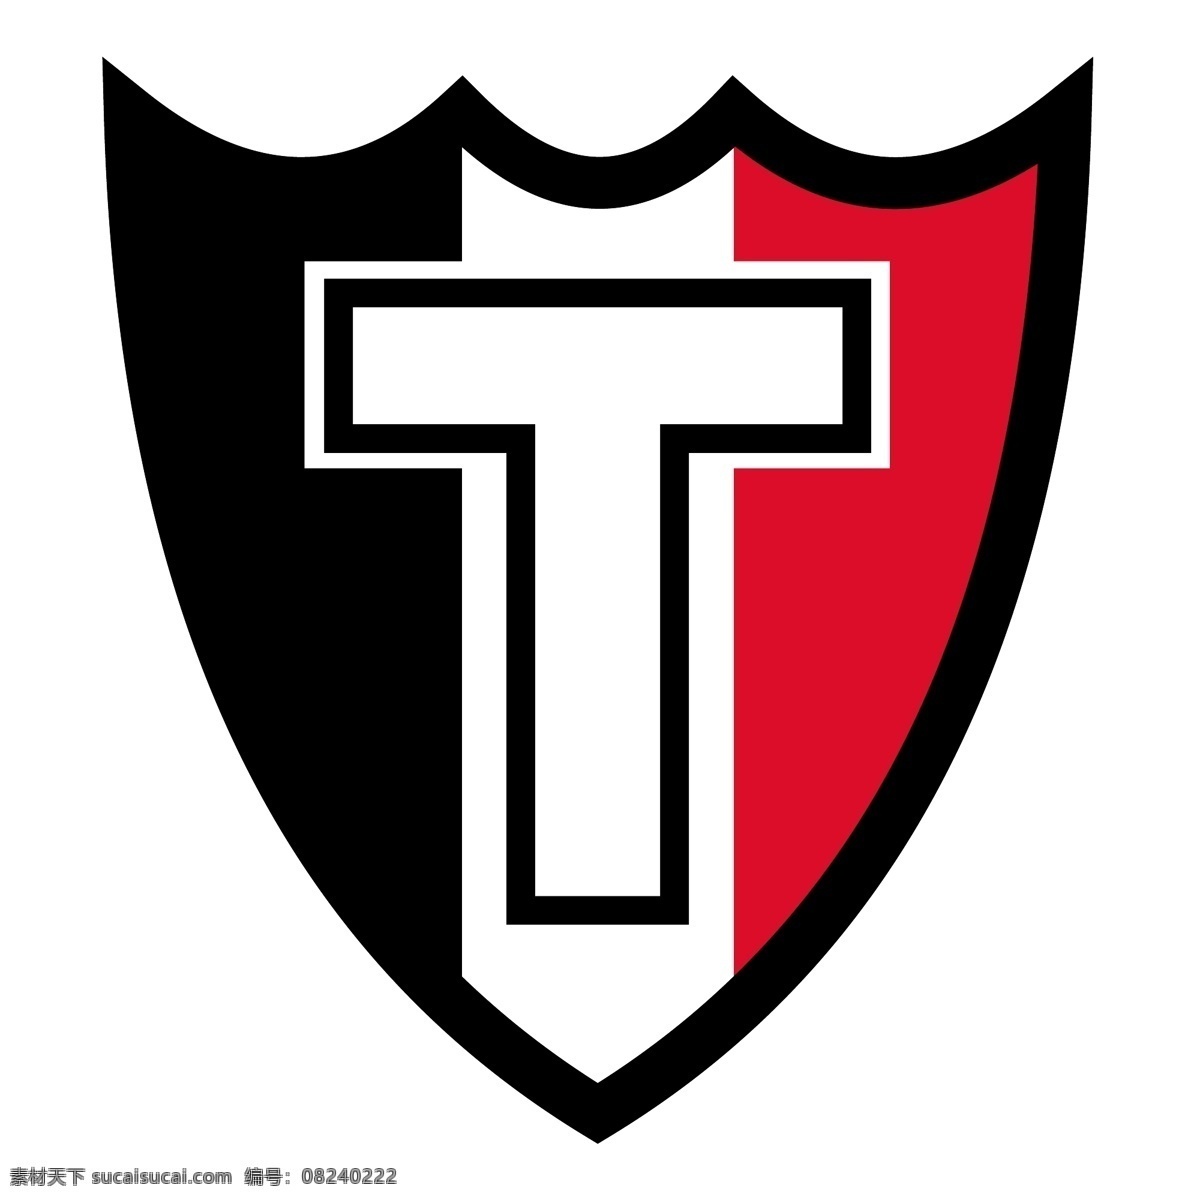 俱乐部 社会 y 拉科 鲁尼亚 三 色 队 拉普拉塔 自由 标志 psd源文件 logo设计